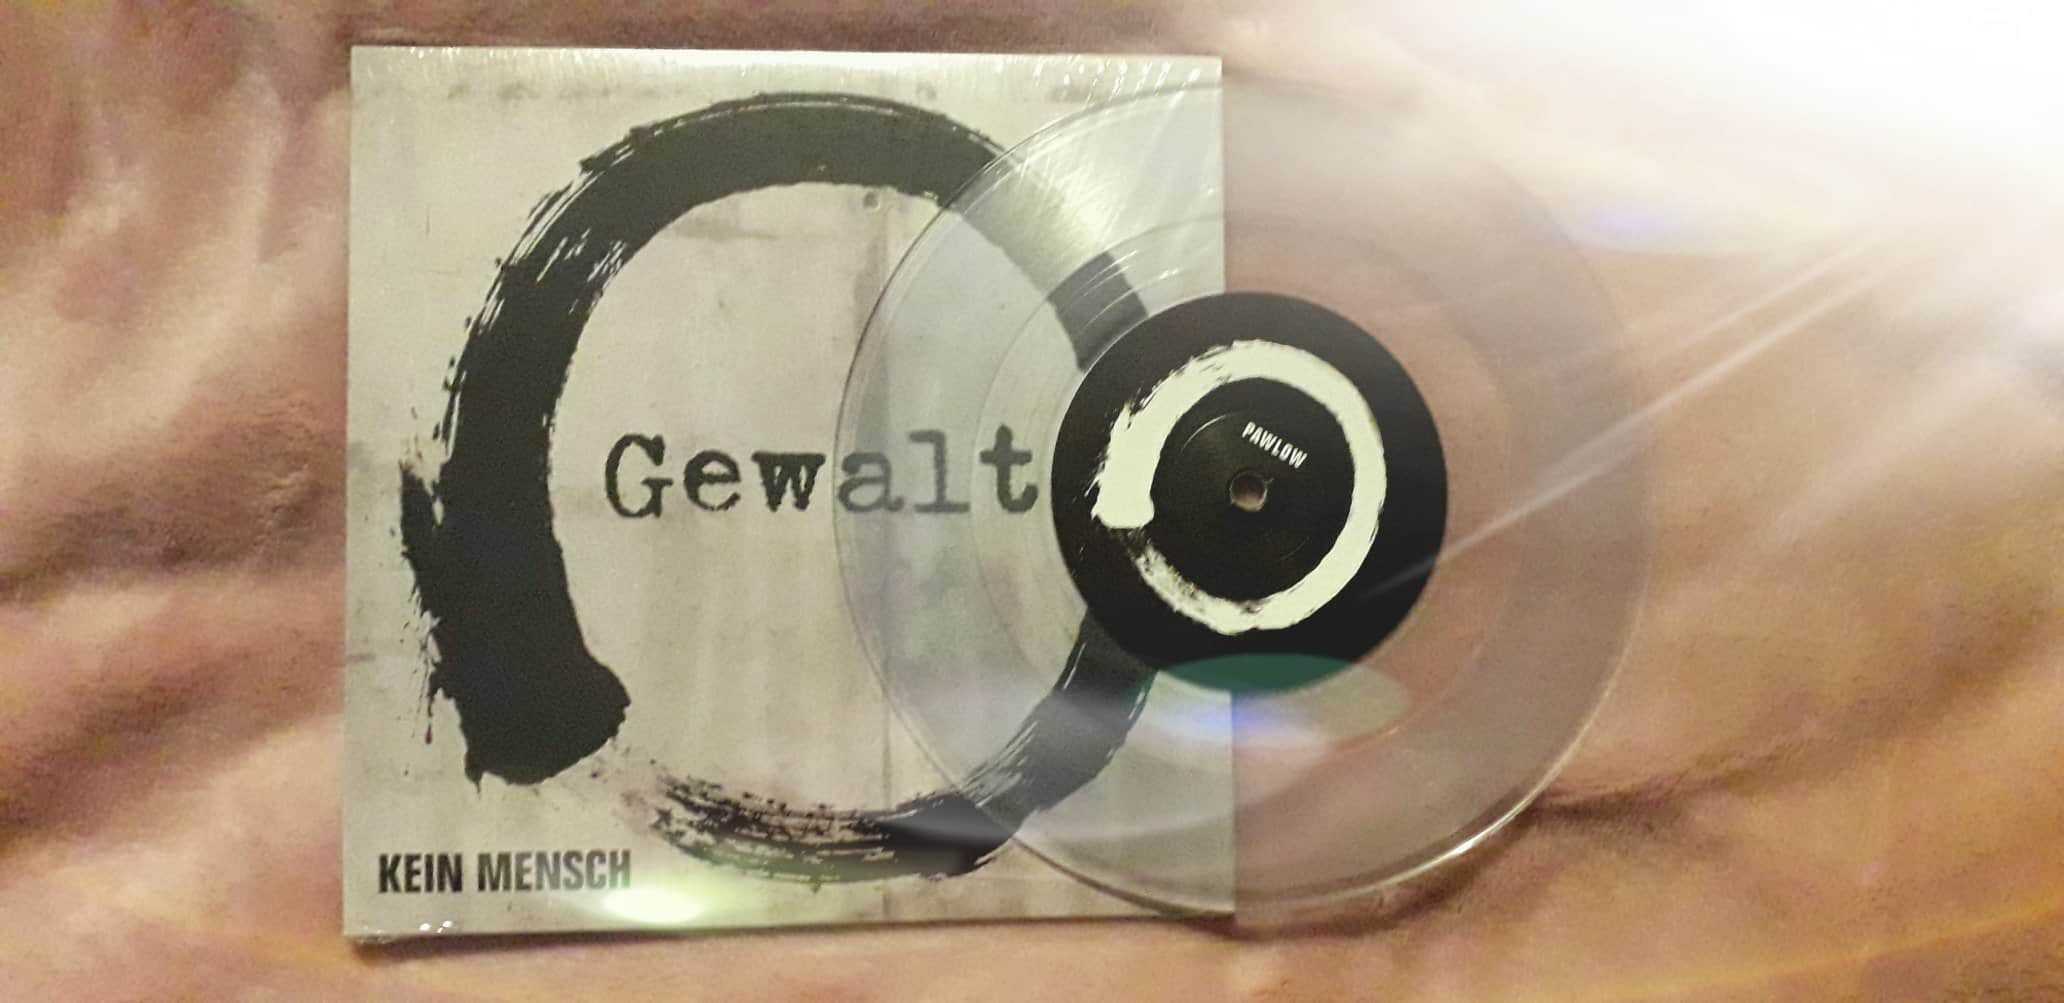 Gewalt - Pawlow/Kein Mensch EP col.7" (Unter Schafen Records) clear vinyl